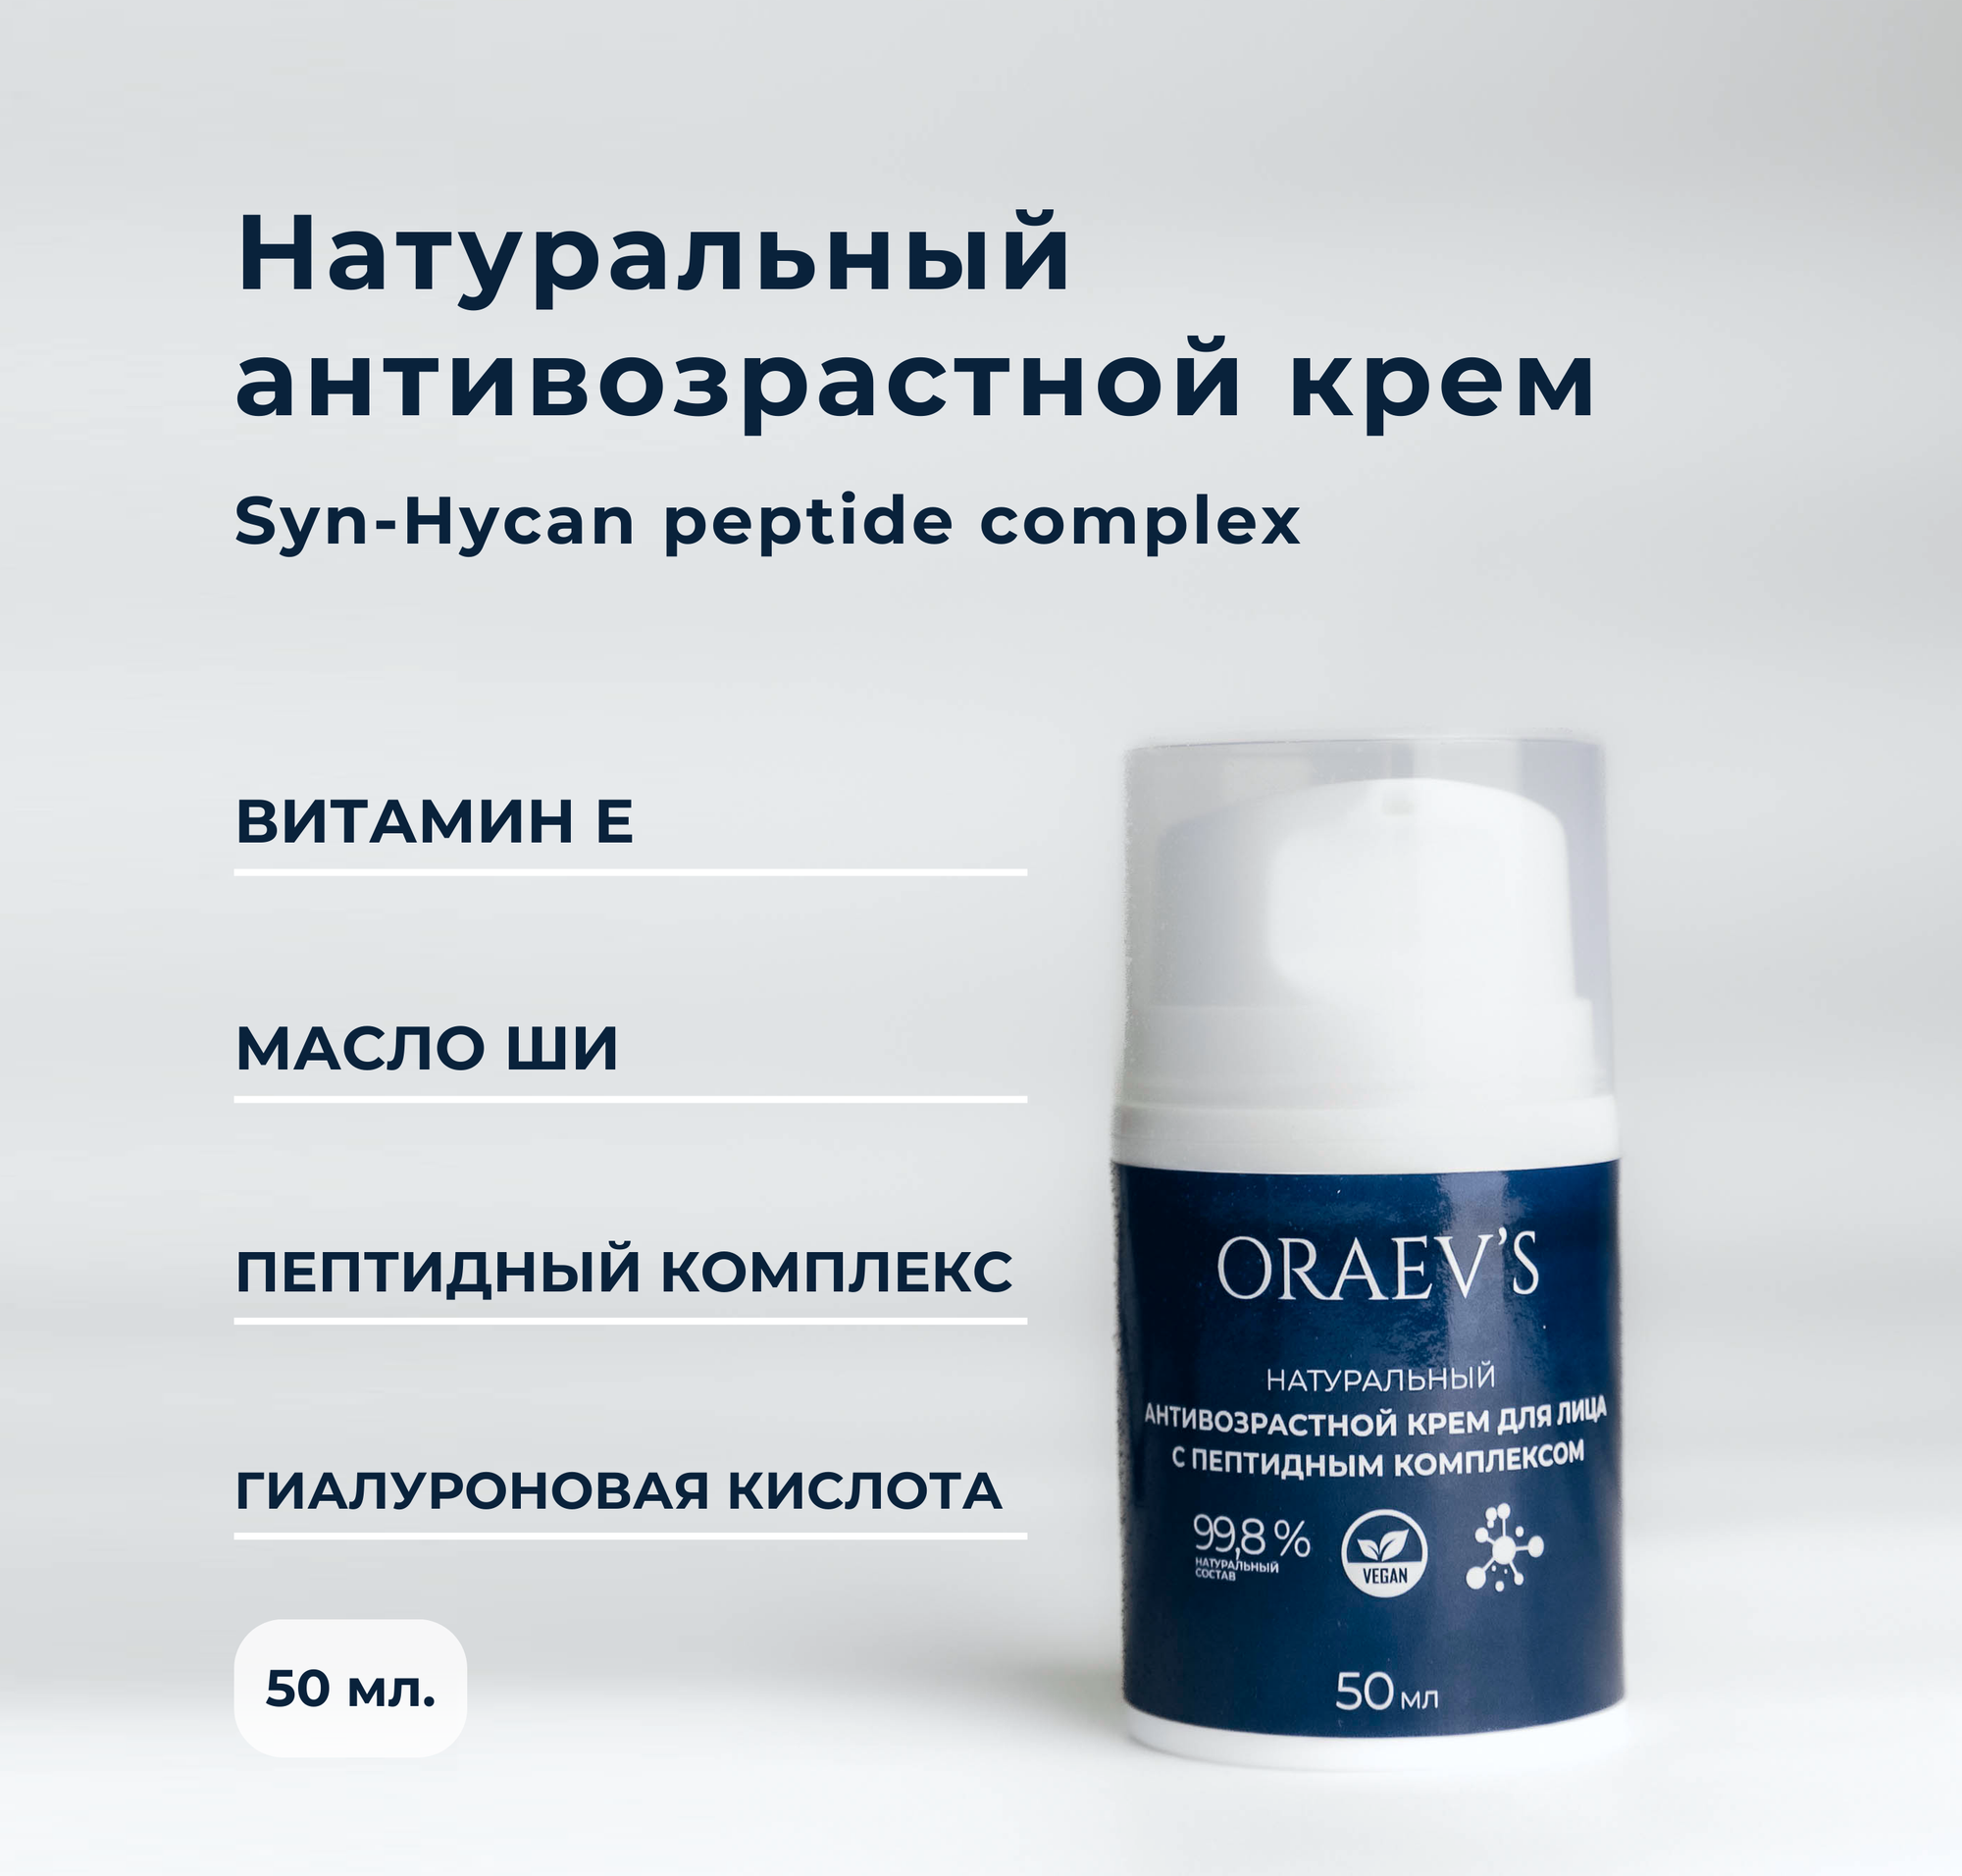 Натуральный антивозрастной крем для лица с пептидным комплексом, ORAEV'S Natural Anti-Wrinkle Cream With Peptide Complex, 50 мл.